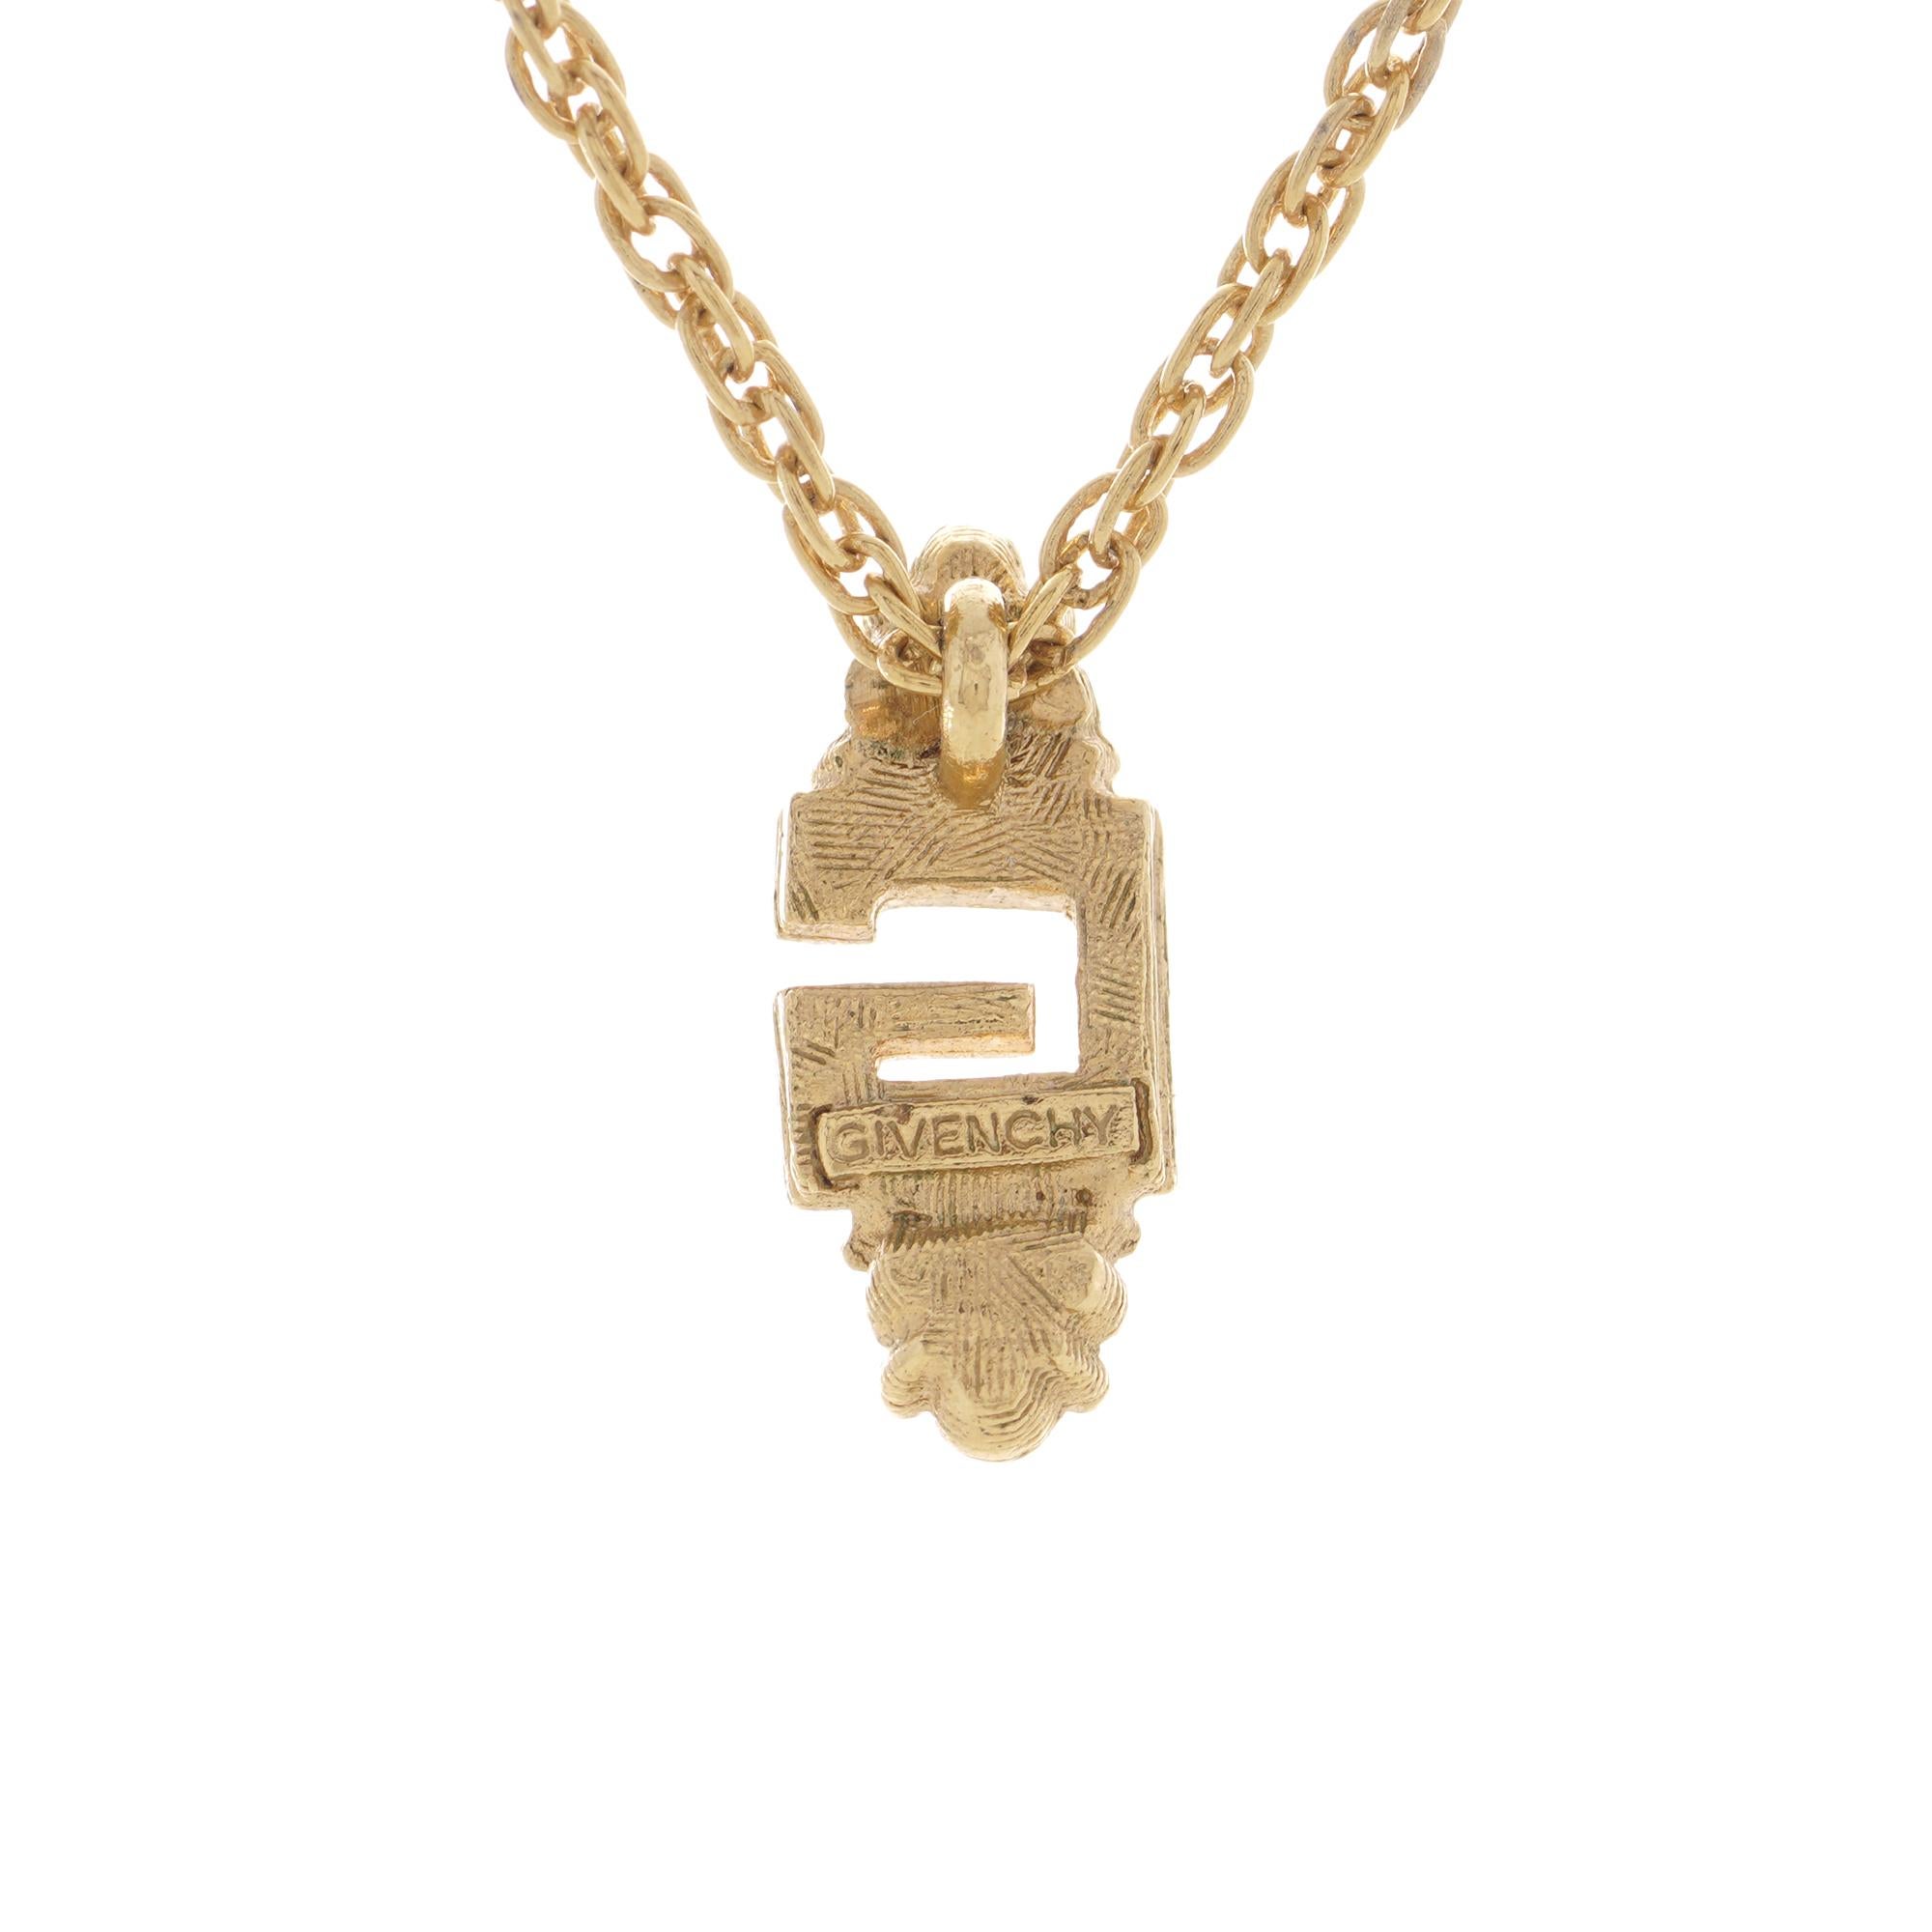 Vintage By Givenchy, collier à chaîne épaisse avec pendentif en forme de lettre G. 
Fabriqué en Circa 1990 

Dimensions :
Poids : 3.4 grammes
Longueur : 40,2 cm

Condit : Occasion, très bon état dans l'ensemble. 
